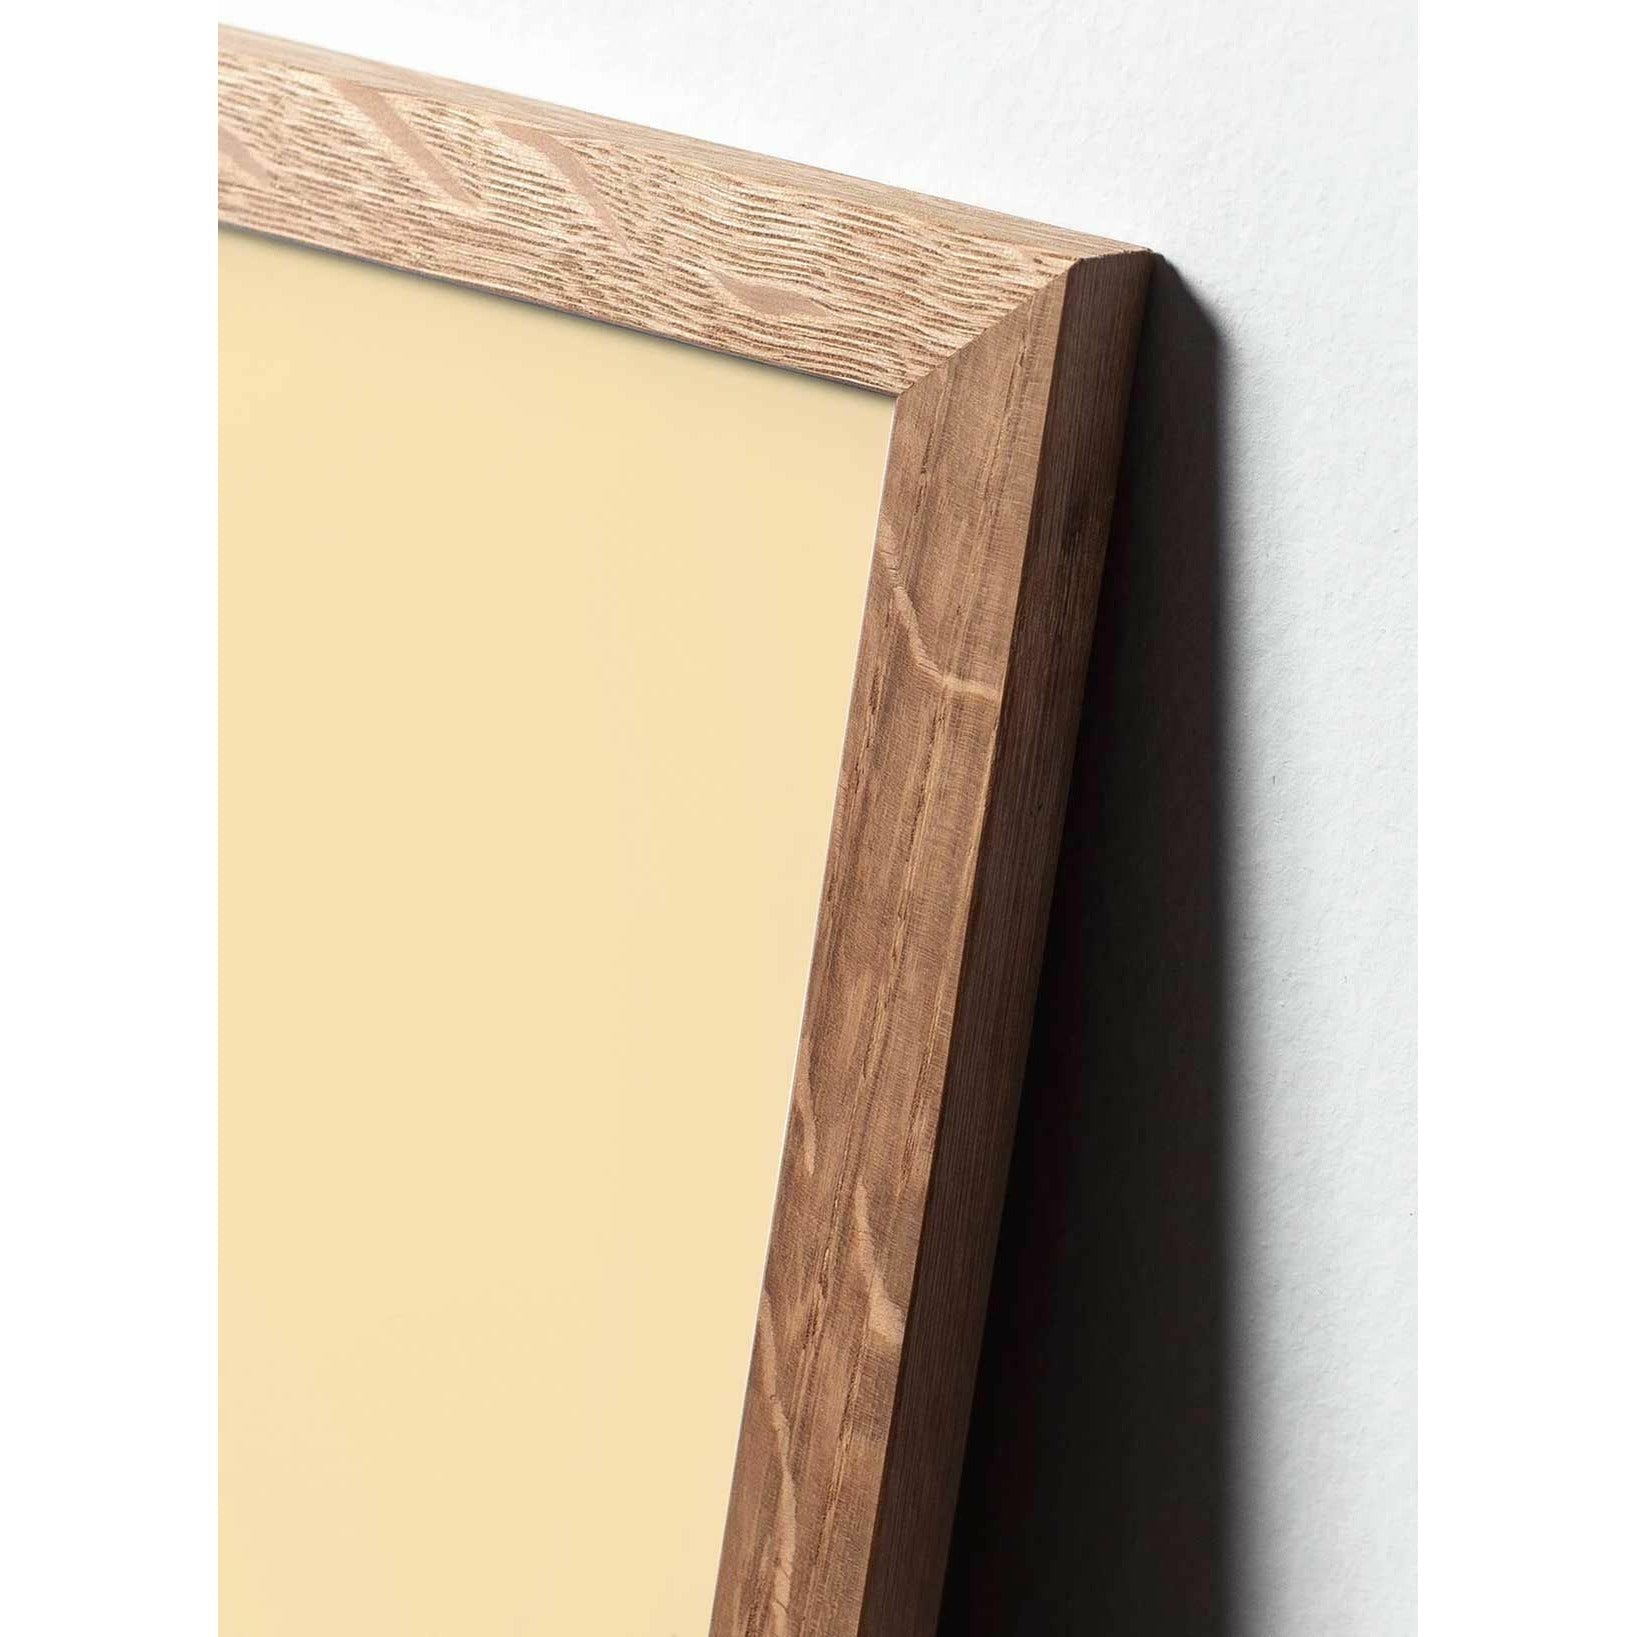 brainchild Pine Cone Classic Poster, frame gemaakt van licht hout 70x100 cm, donkerblauwe achtergrond